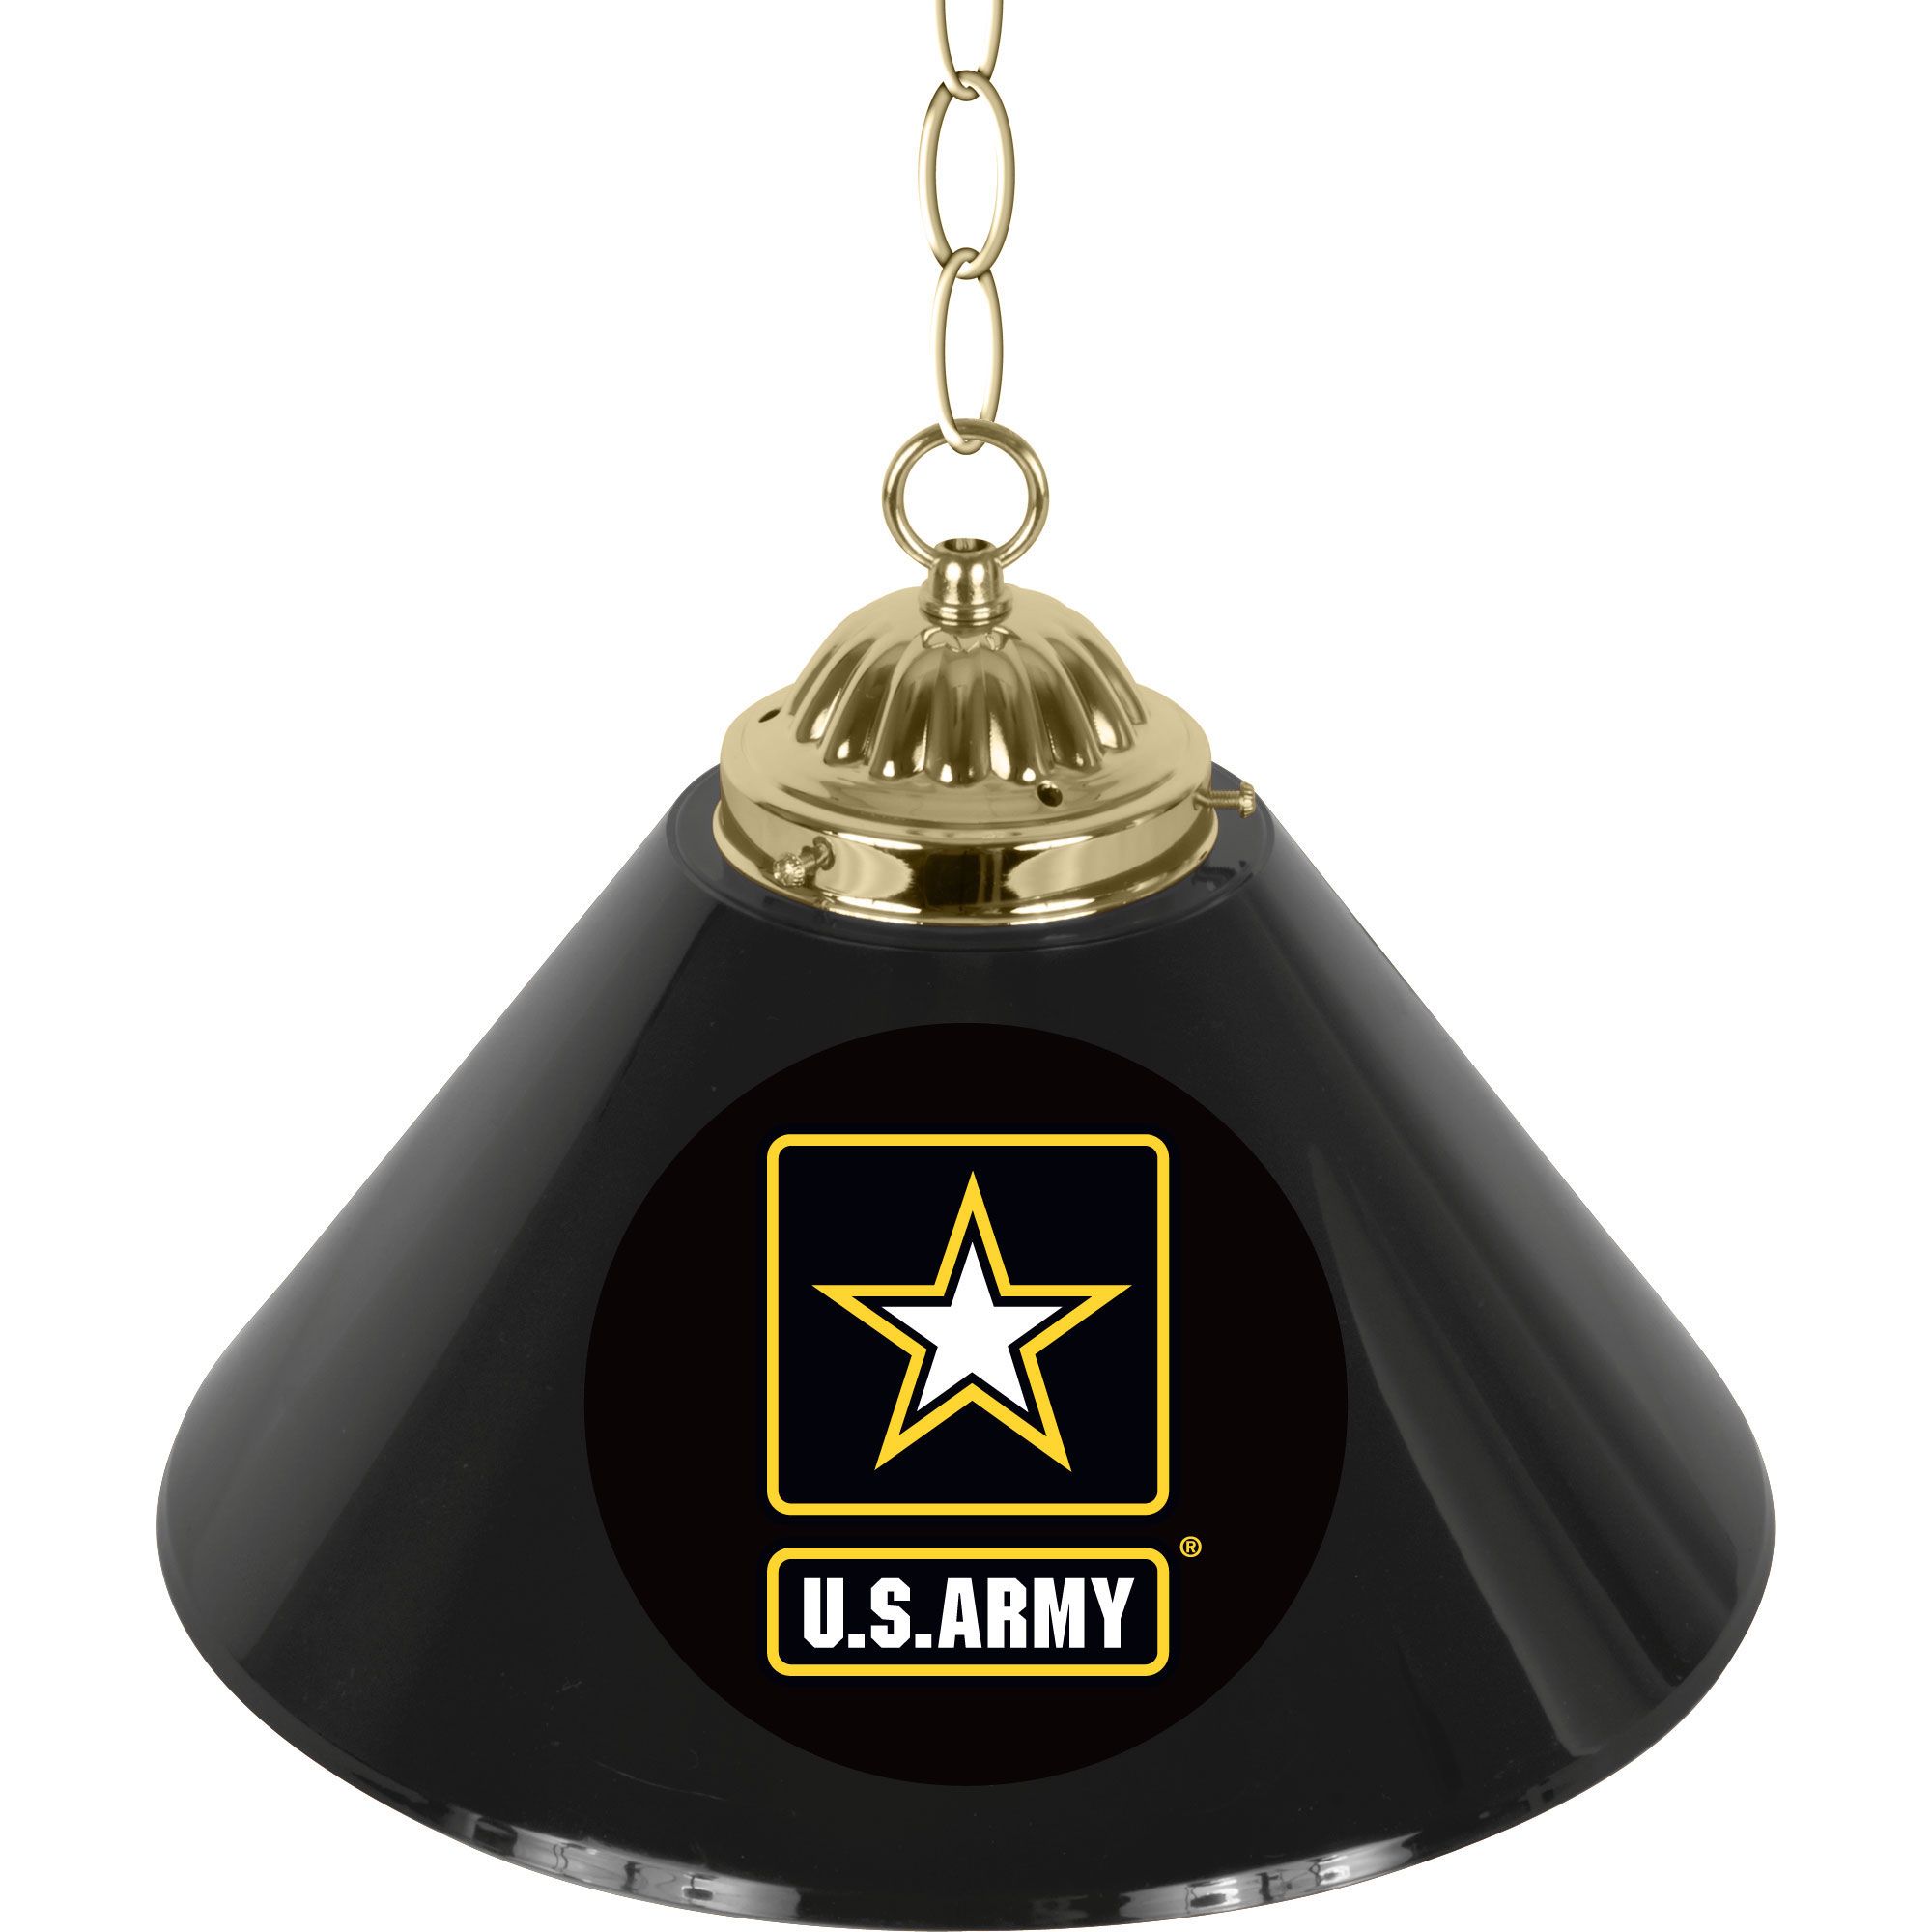 U.S. Army Single Shade Bar Lamp - 14 inch